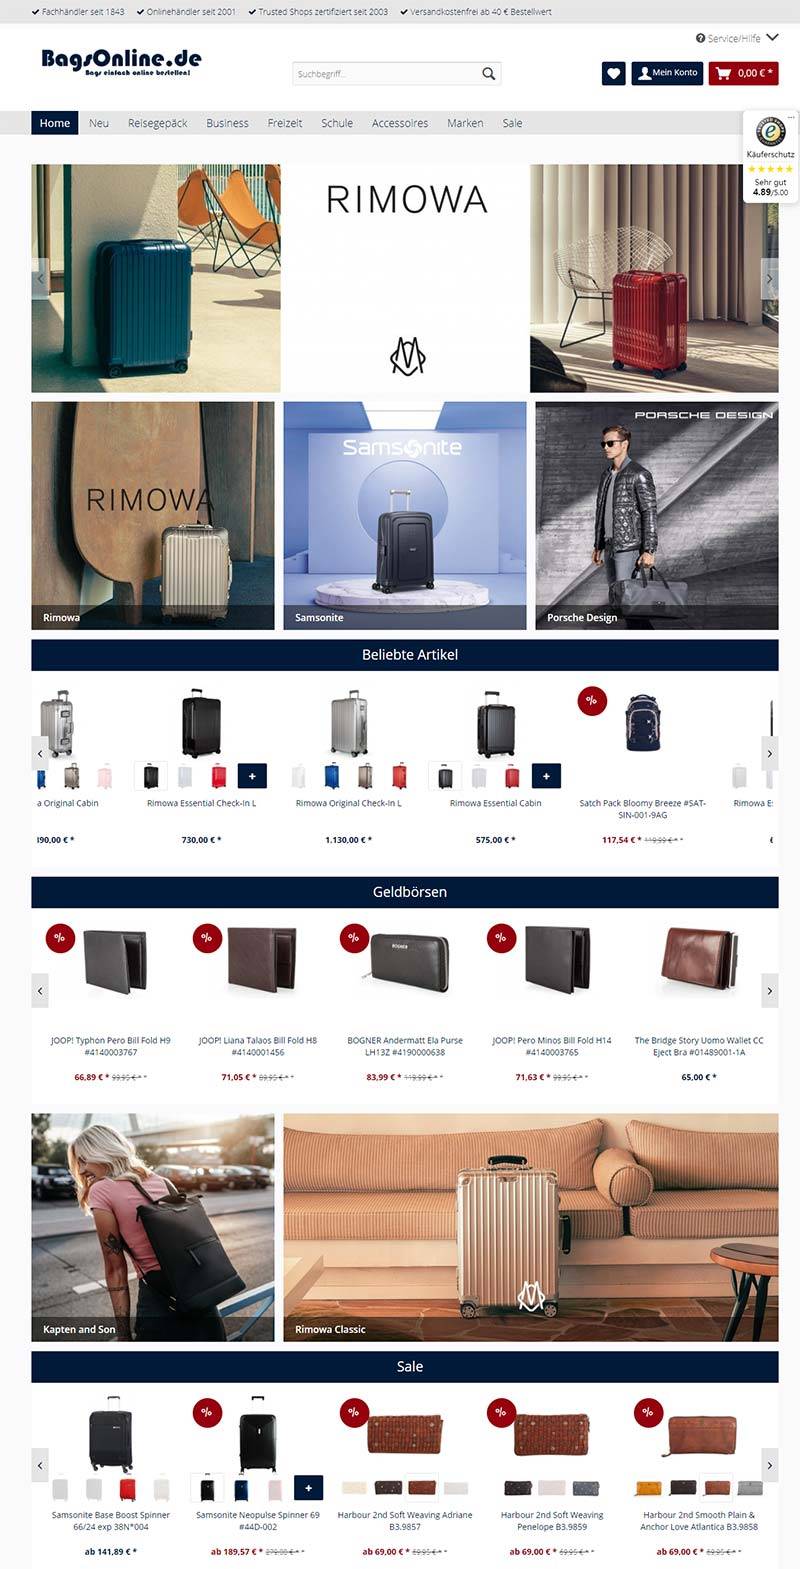 BagsOnline 德国品牌箱包购物网站